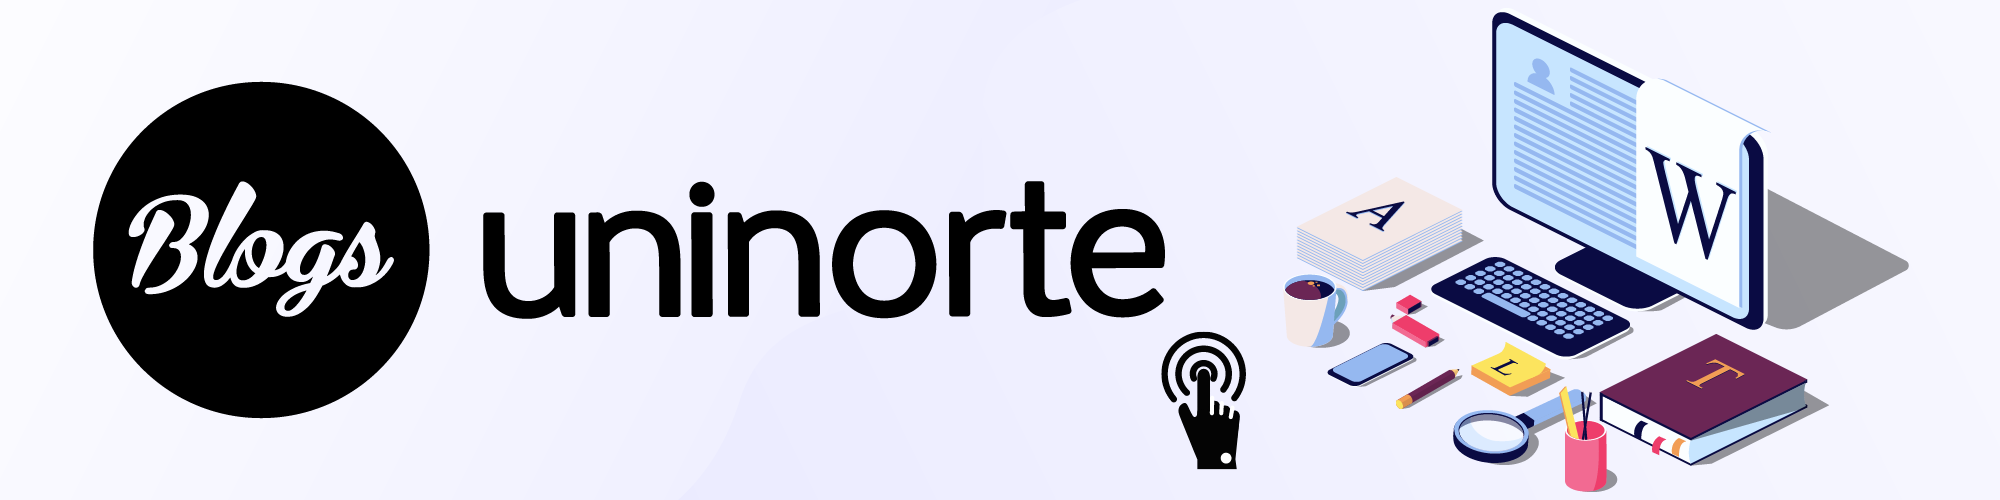 Blog Uninorte